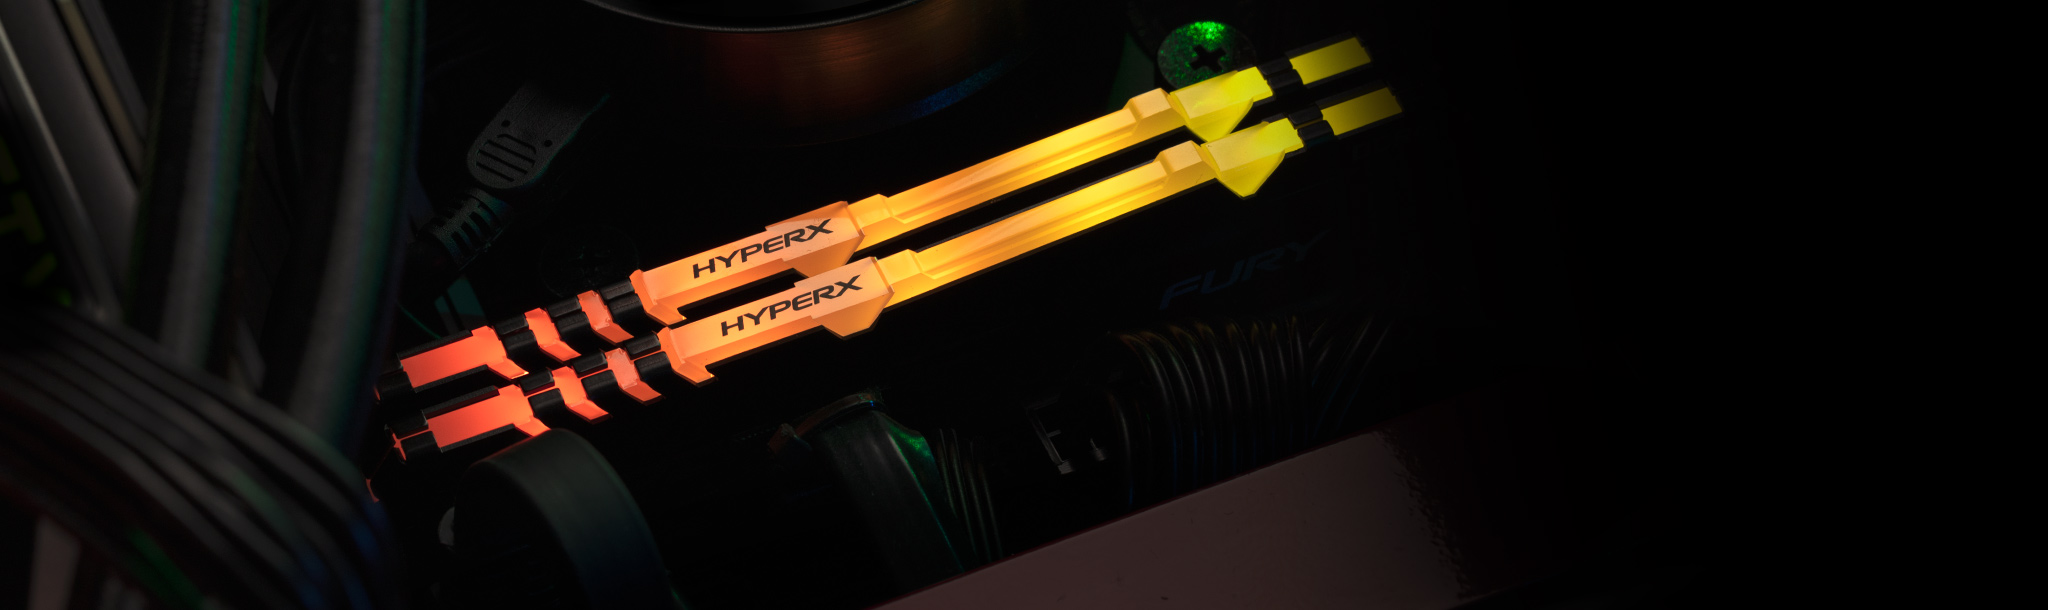 PC เดสก์ท็อปเกมมิ่งกับหน่วยความจำ HyperX RGB ภายในเครื่อง